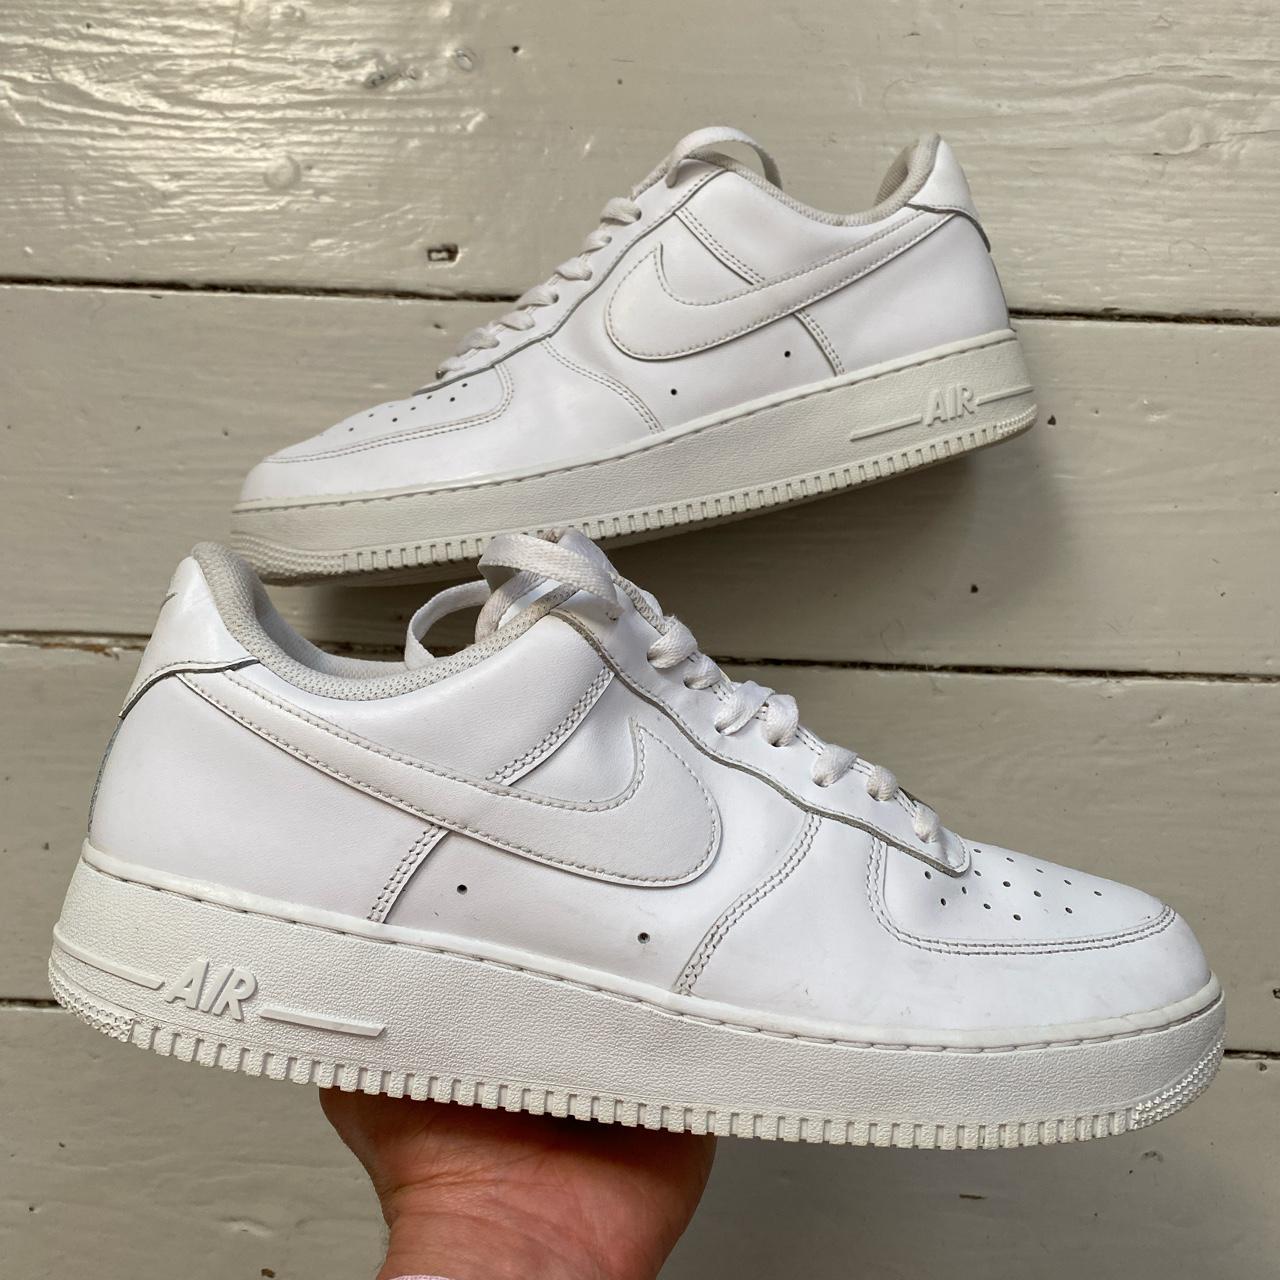 Nike Air Force 1 White 💎 Clean pair near mint... - Depop